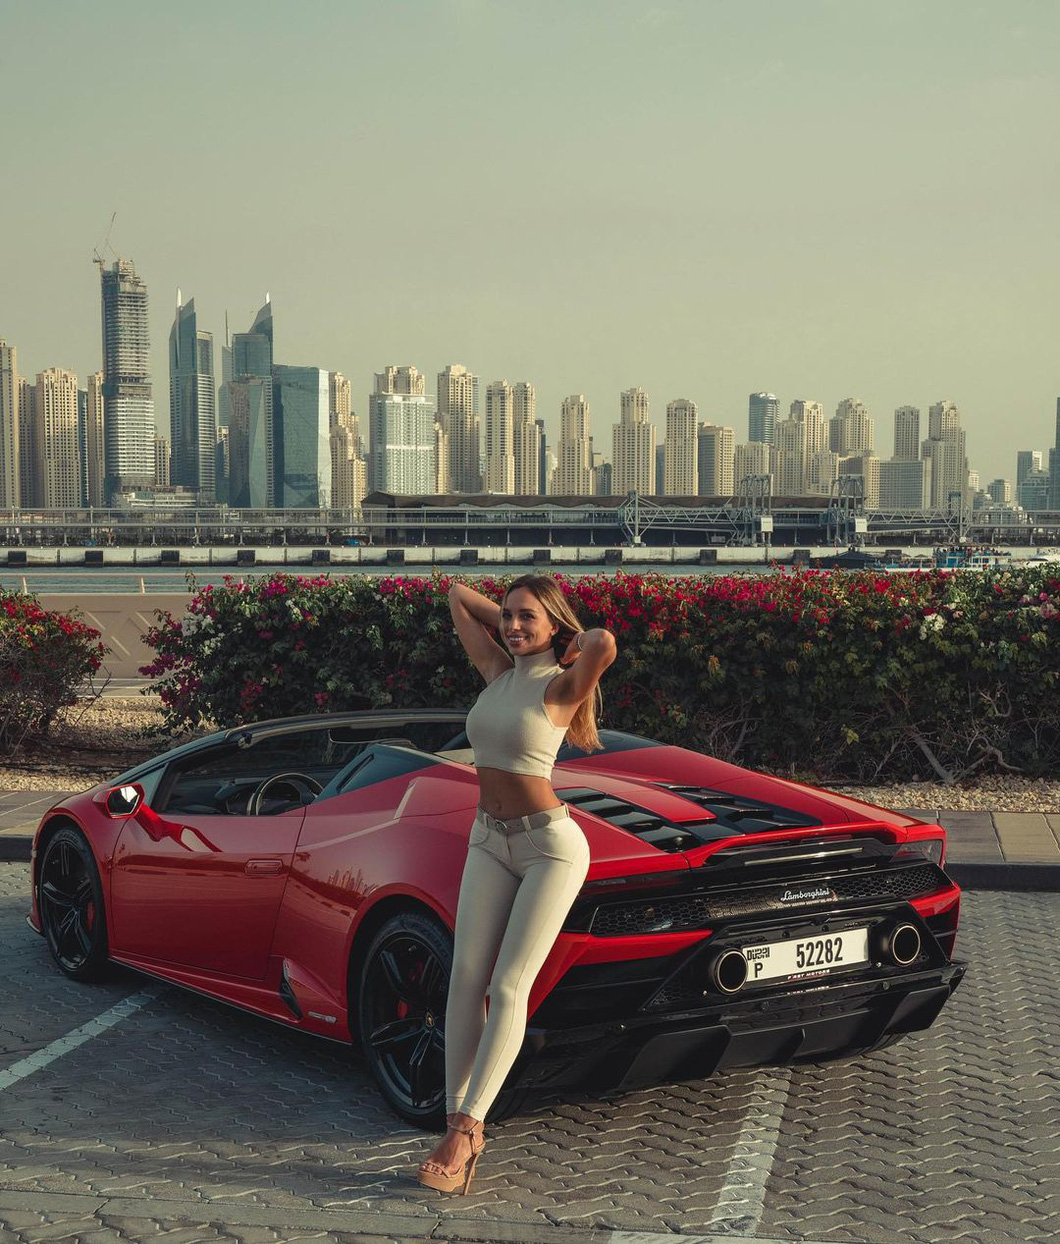 Người mẫu nổi tiếng kéo siêu xe Lamborghini đi dạo như dắt cún, cư dân mạng xuýt xoa - Ảnh 3.